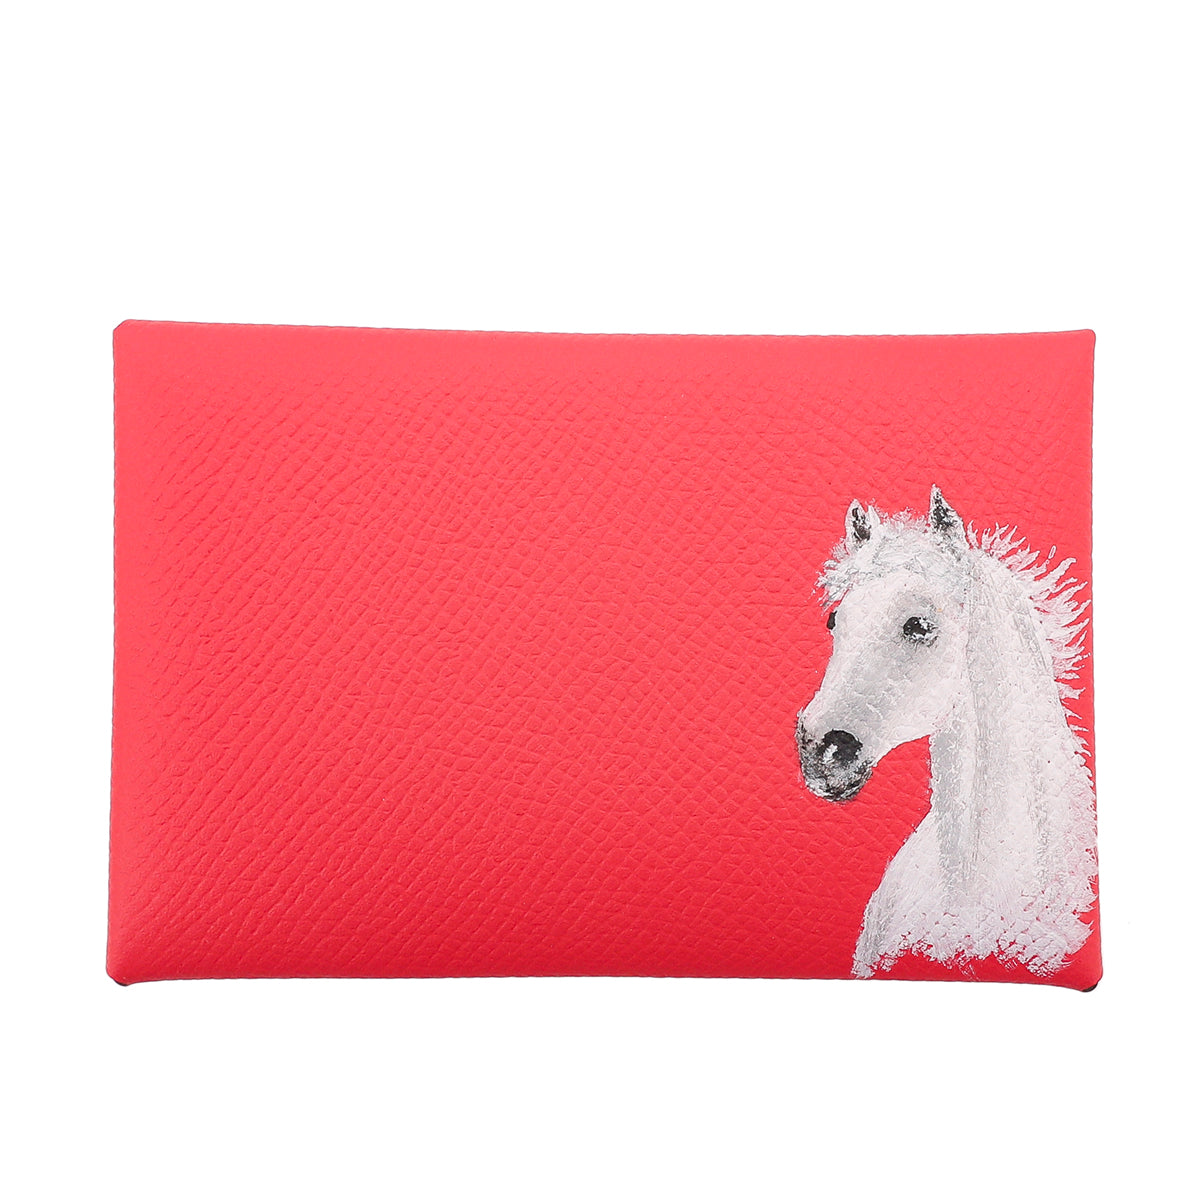 Hermes Rose Lipstick Horse Painted Calvi Card Holder